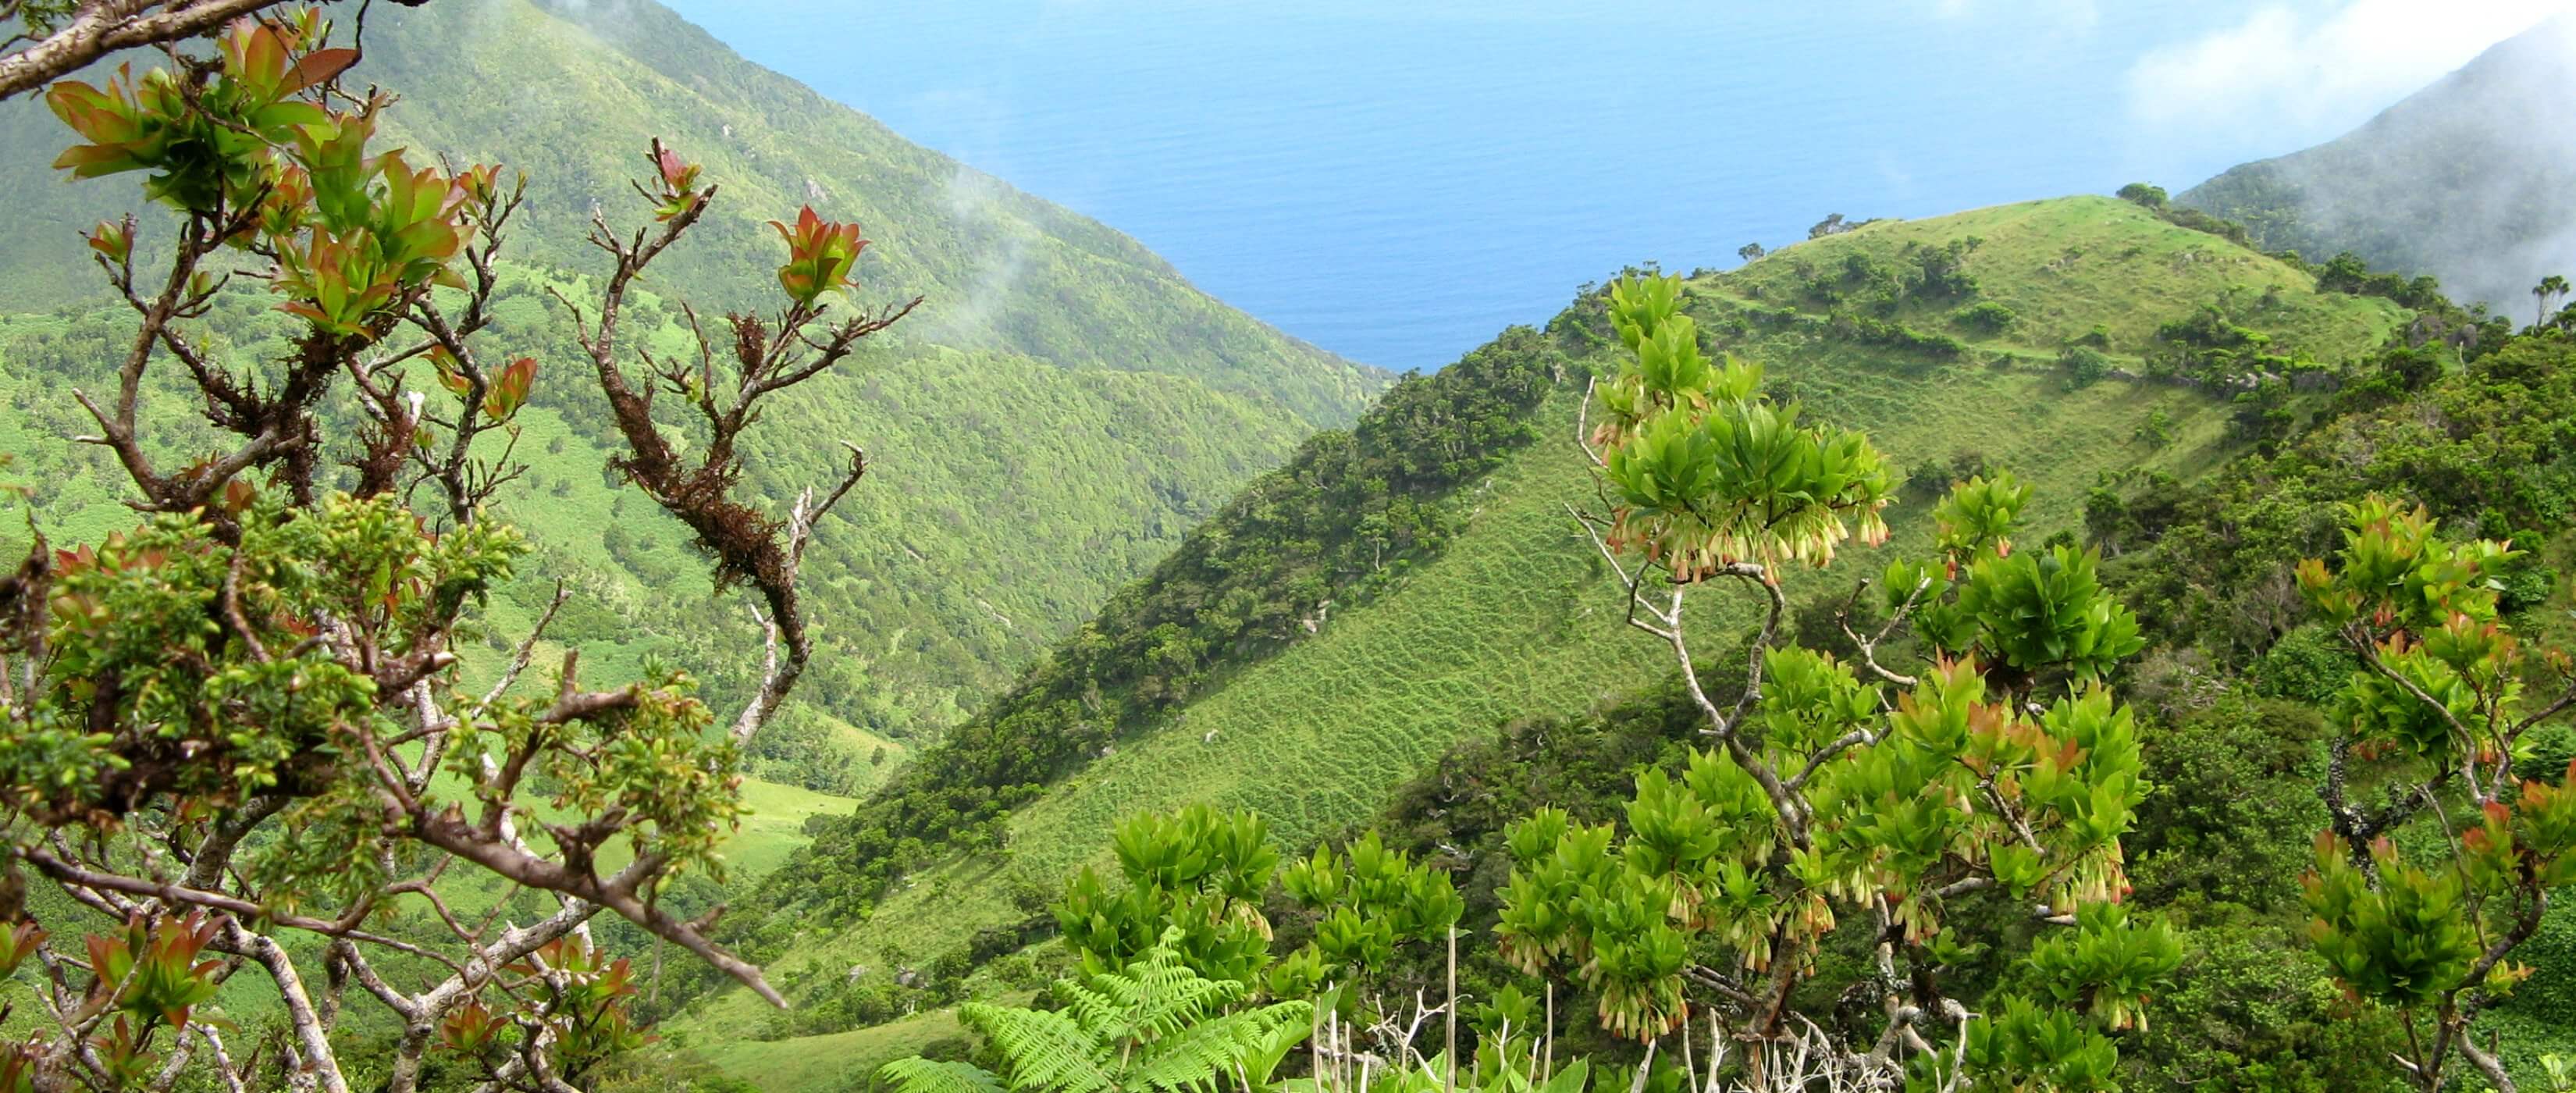 Foto: Immergrne Berglandschaft auf den Azoren - Lupe Reisen